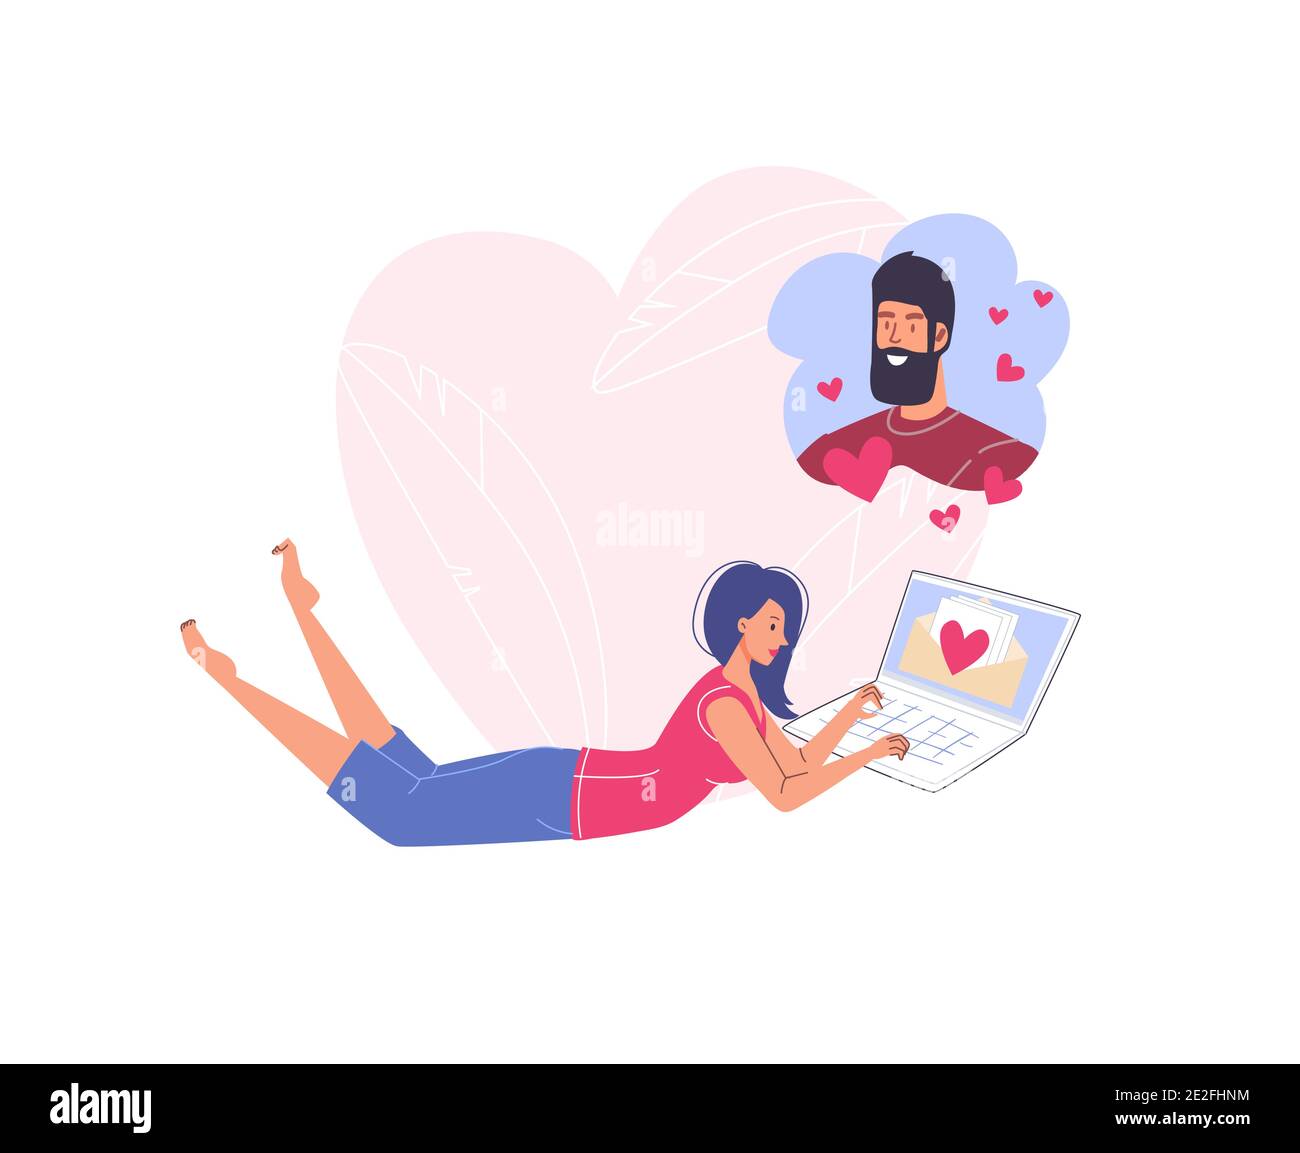 Personnages de dessin animé plat couple dans l'amour communiquer en ligne, salutation de Saint-Valentin concept d'illustration de vecteur de carte Illustration de Vecteur